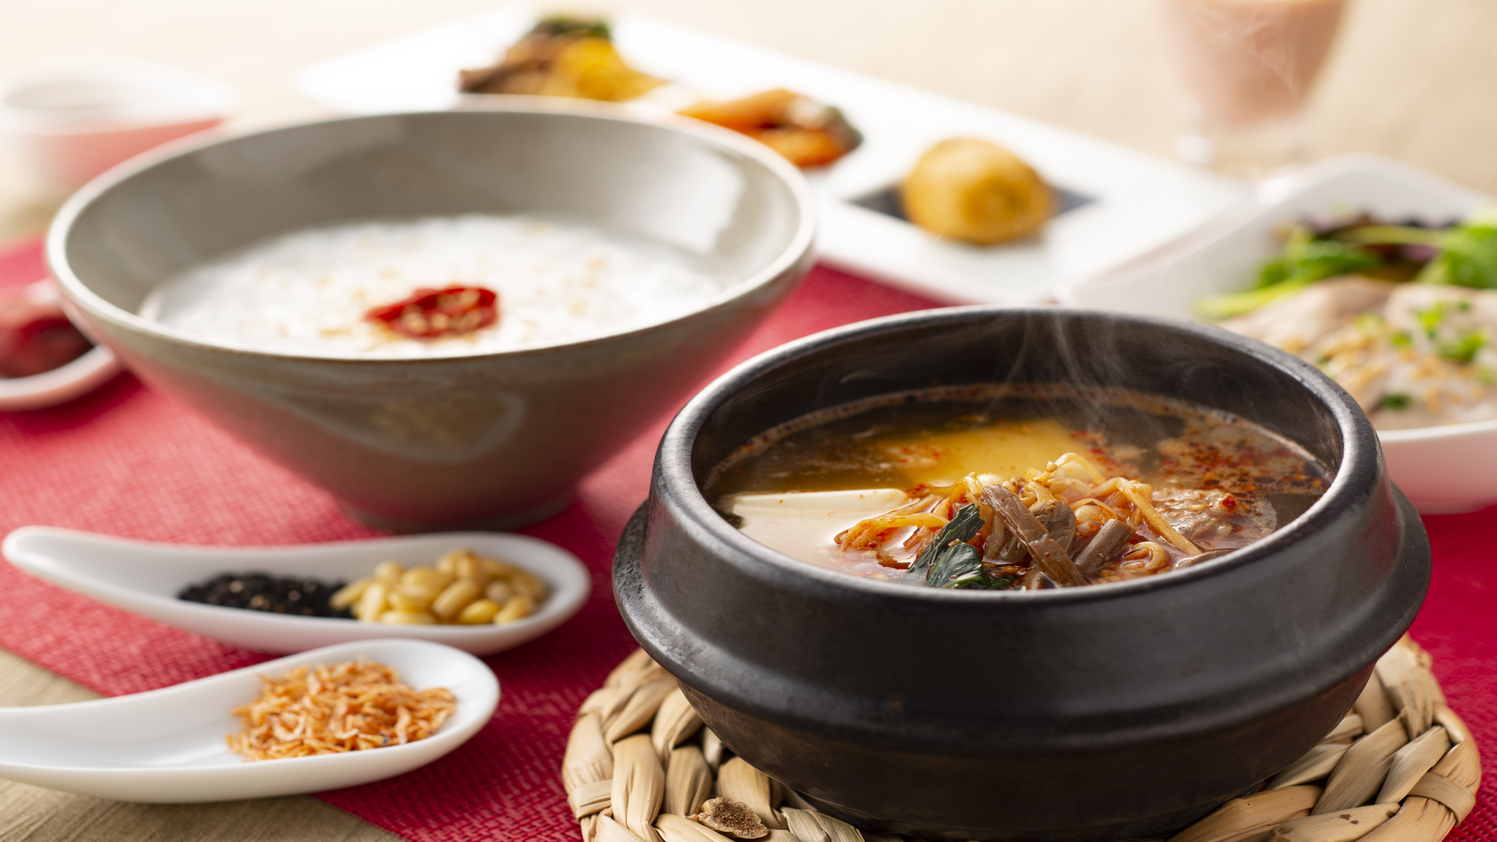 【朝食/韓国膳】メインの韓国風豆腐チゲはカルビスープをベースに、出汁の効いた程良い辛さでご提供。